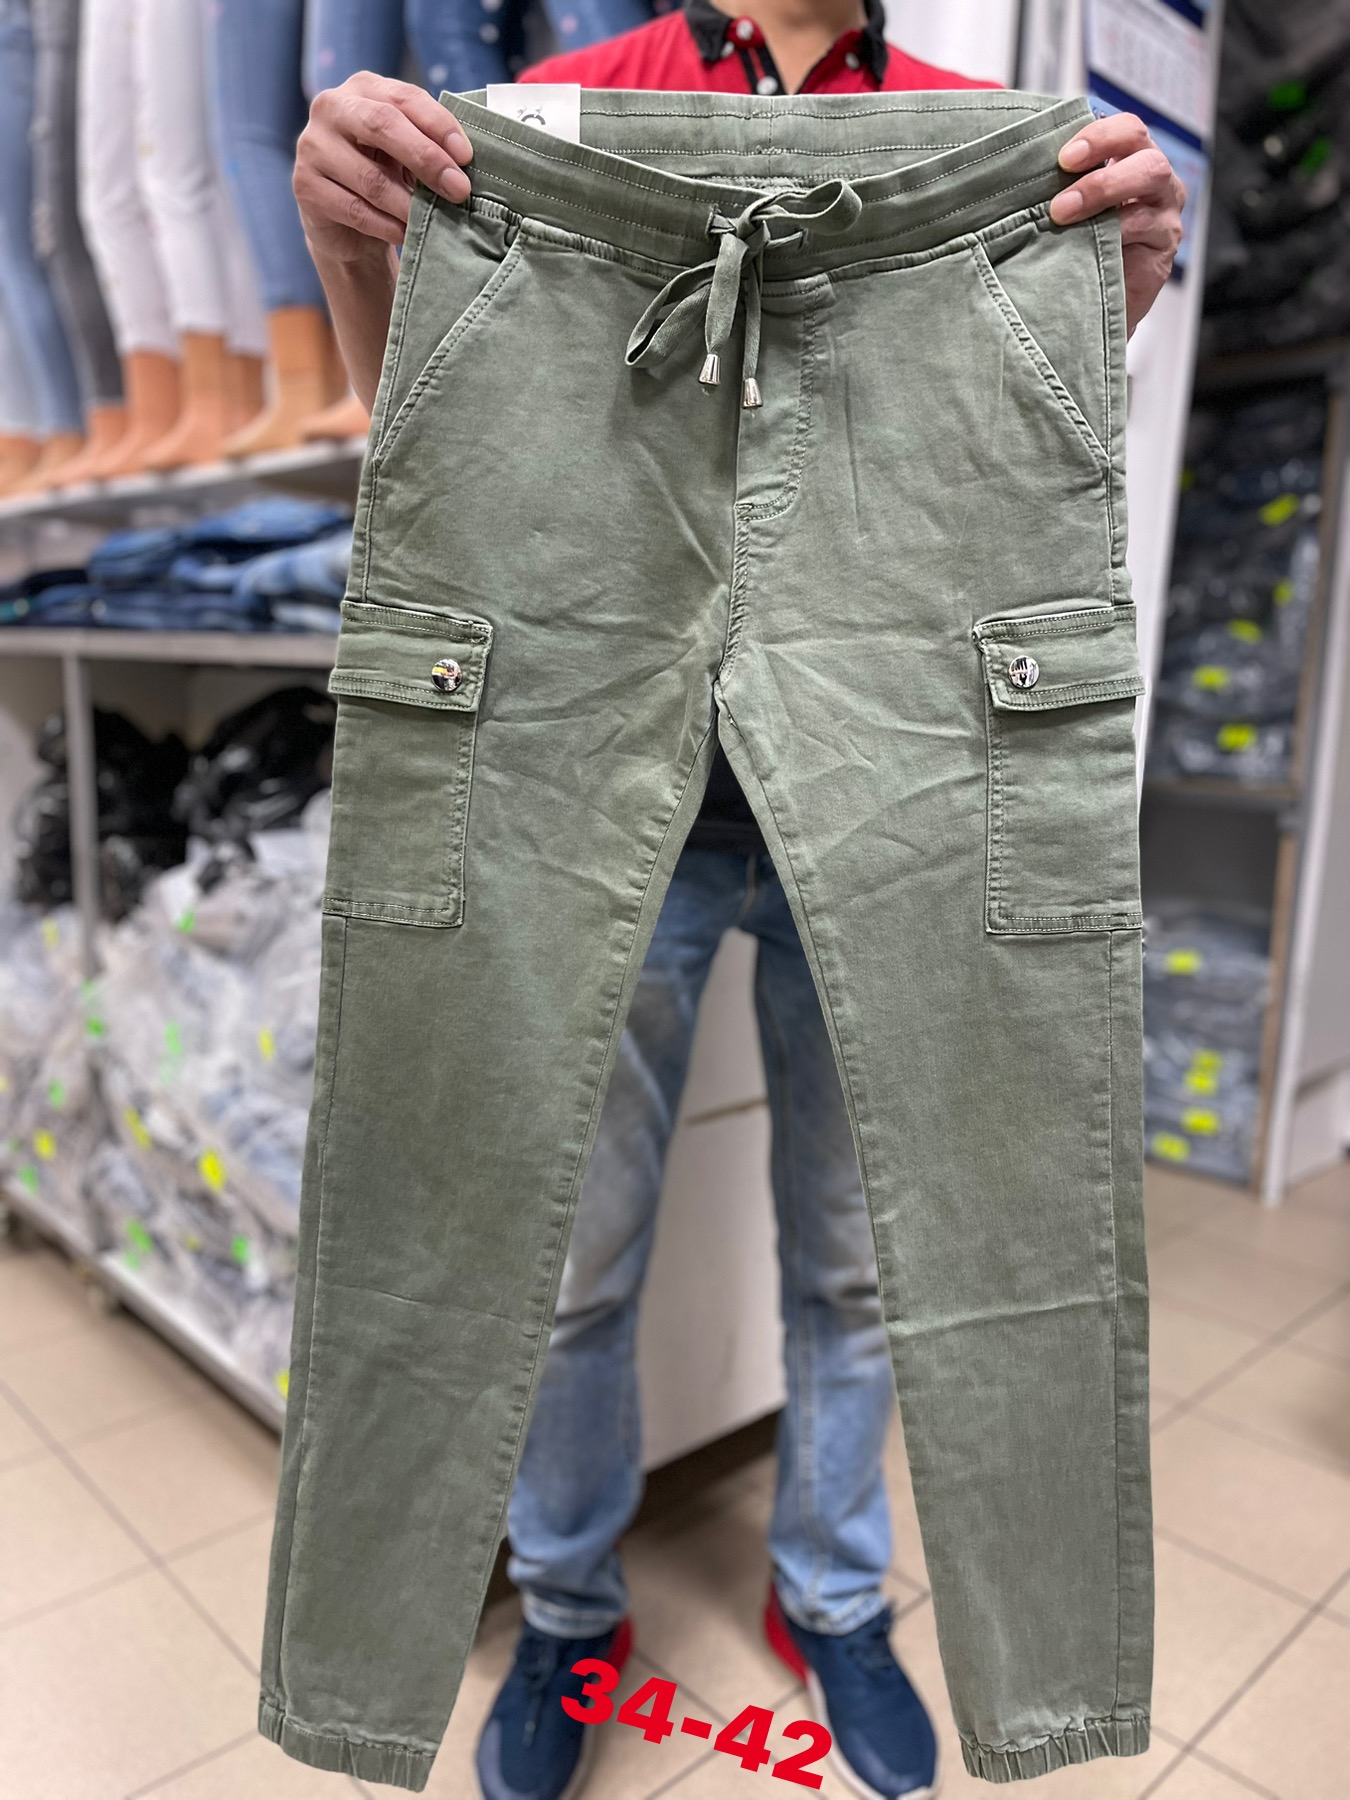 Spodnie  damskie jeans   Roz 34-42.  Paczka 12 szt